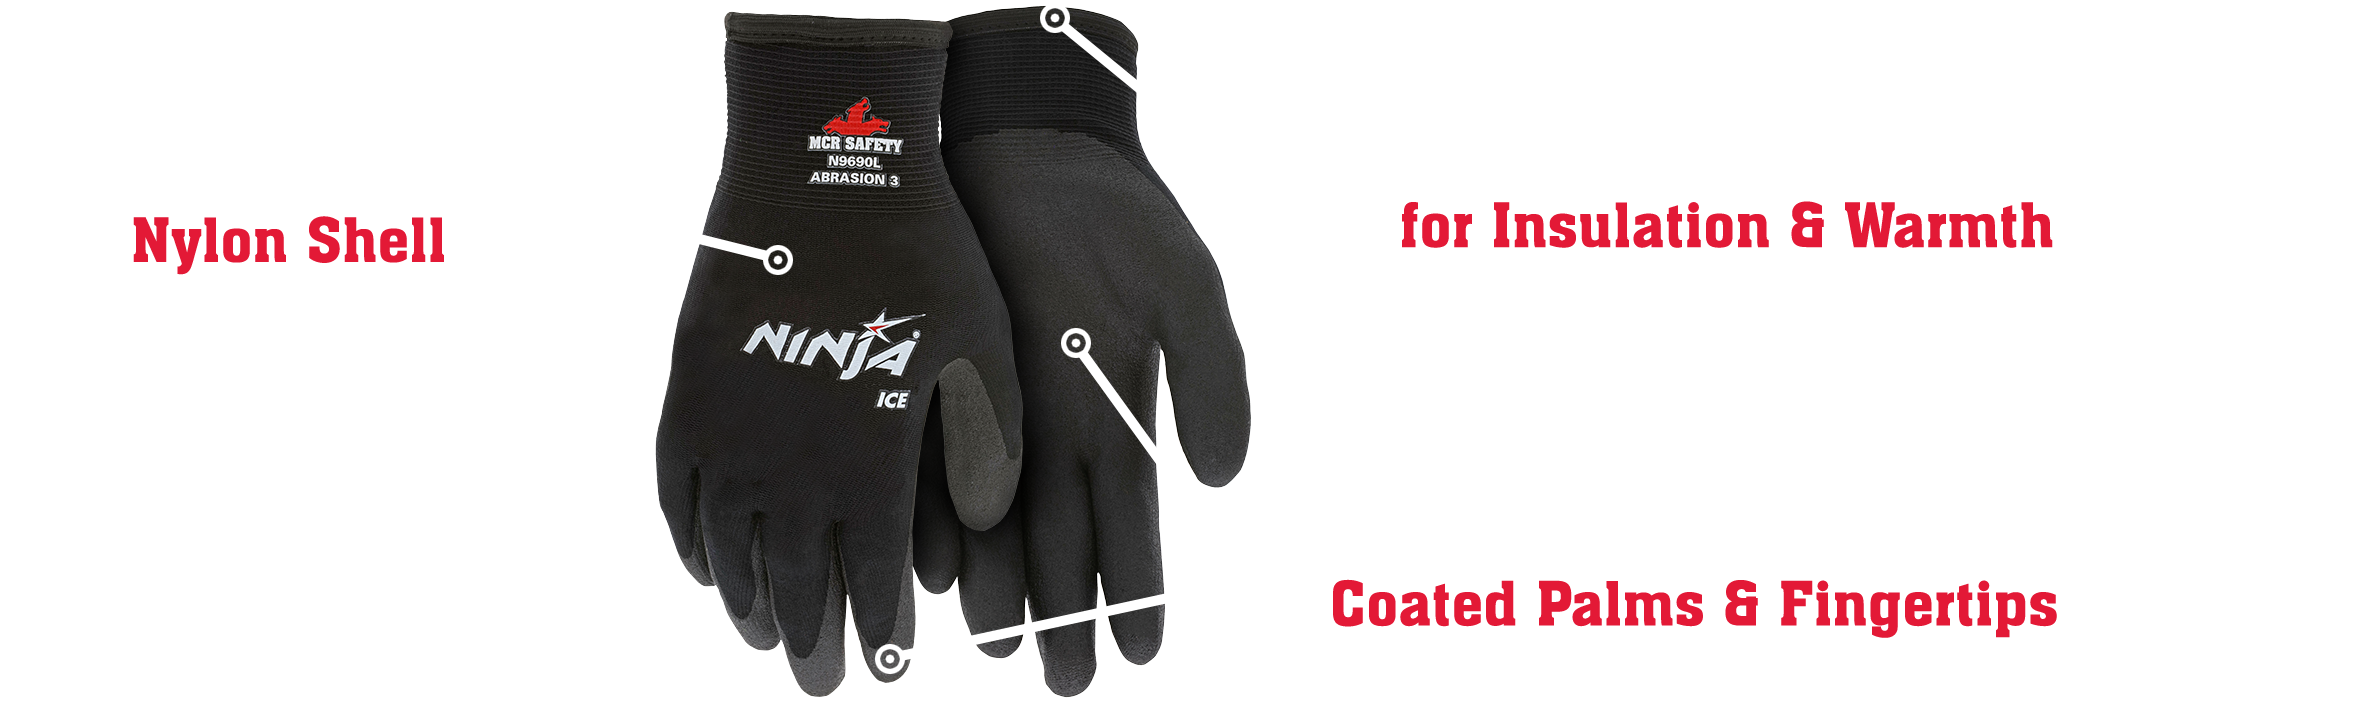 Ninja Ice Gloves, Black, Medium